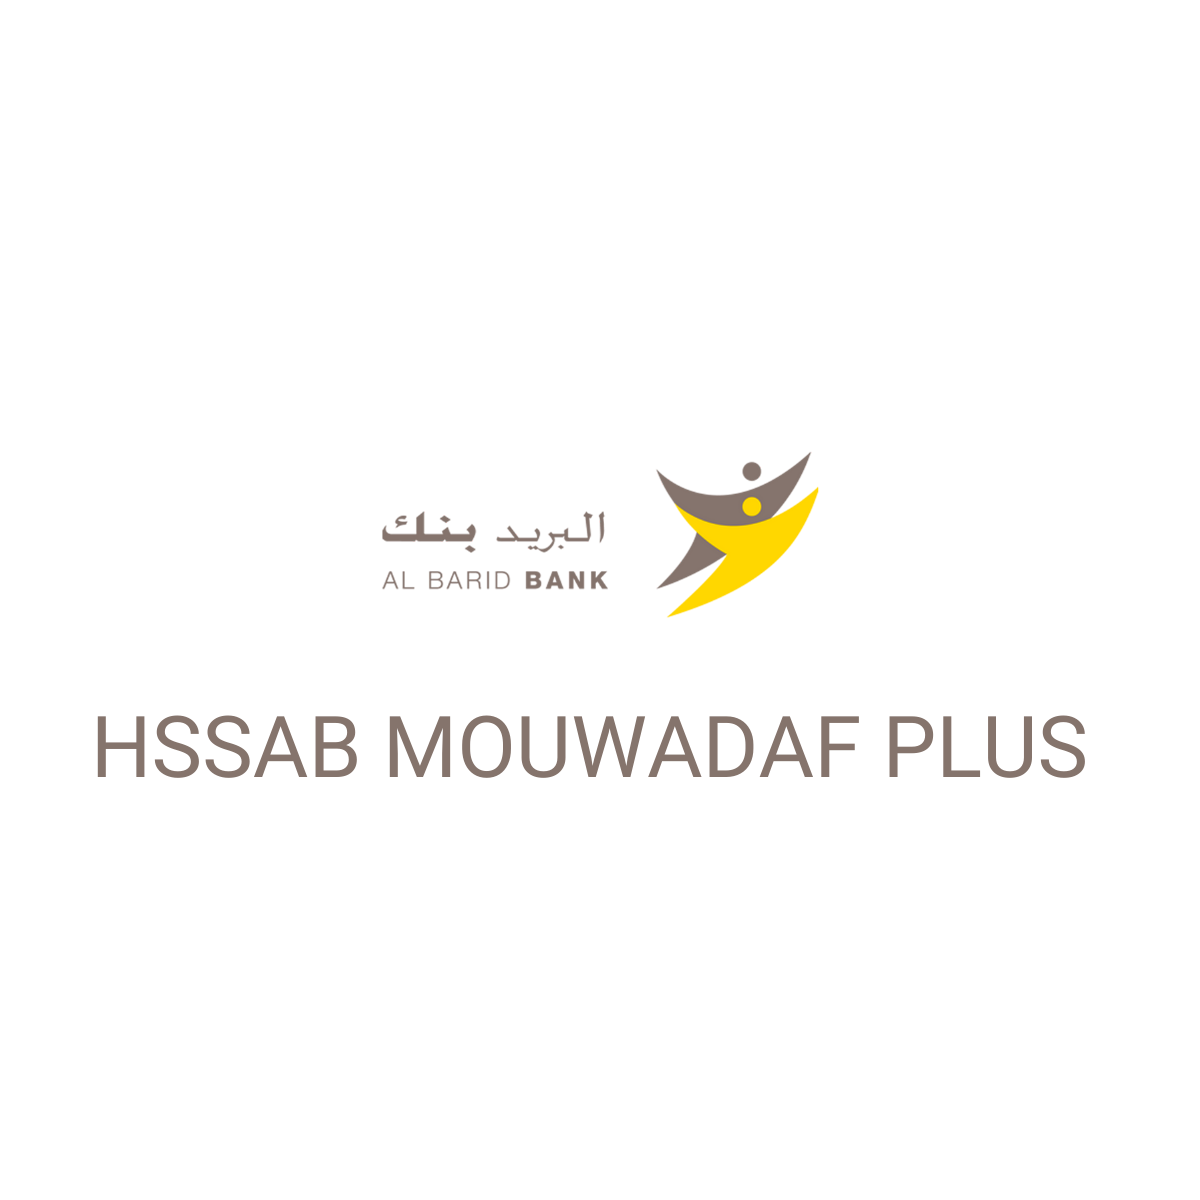 HSSAB MOUWADAF PLUS